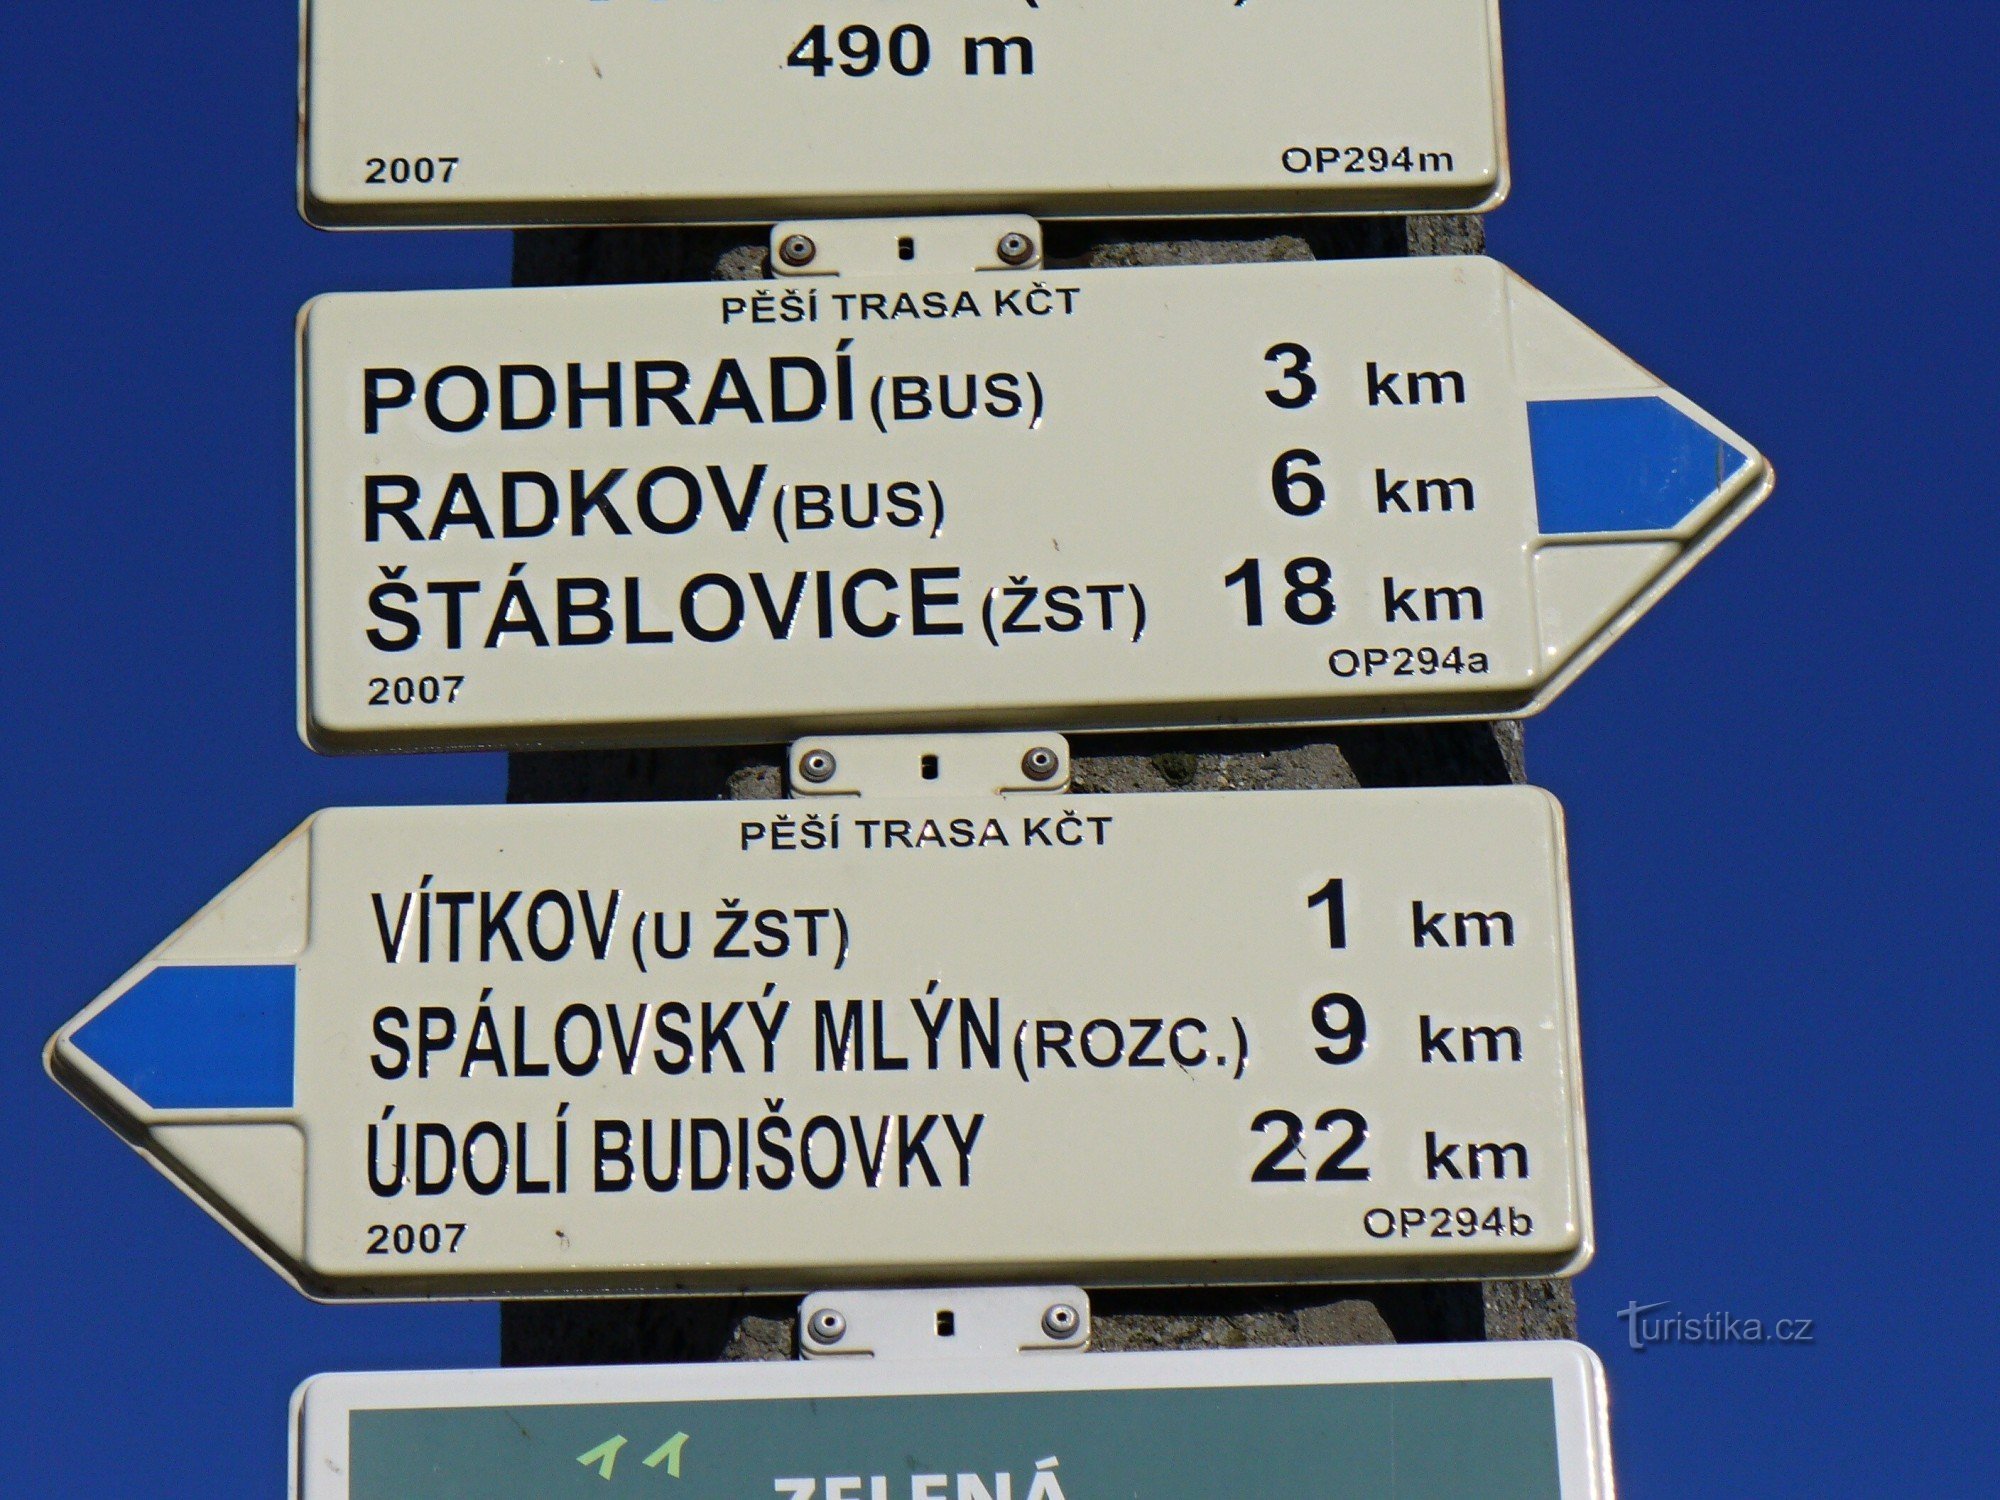 Følg den blå vej til Podhradí